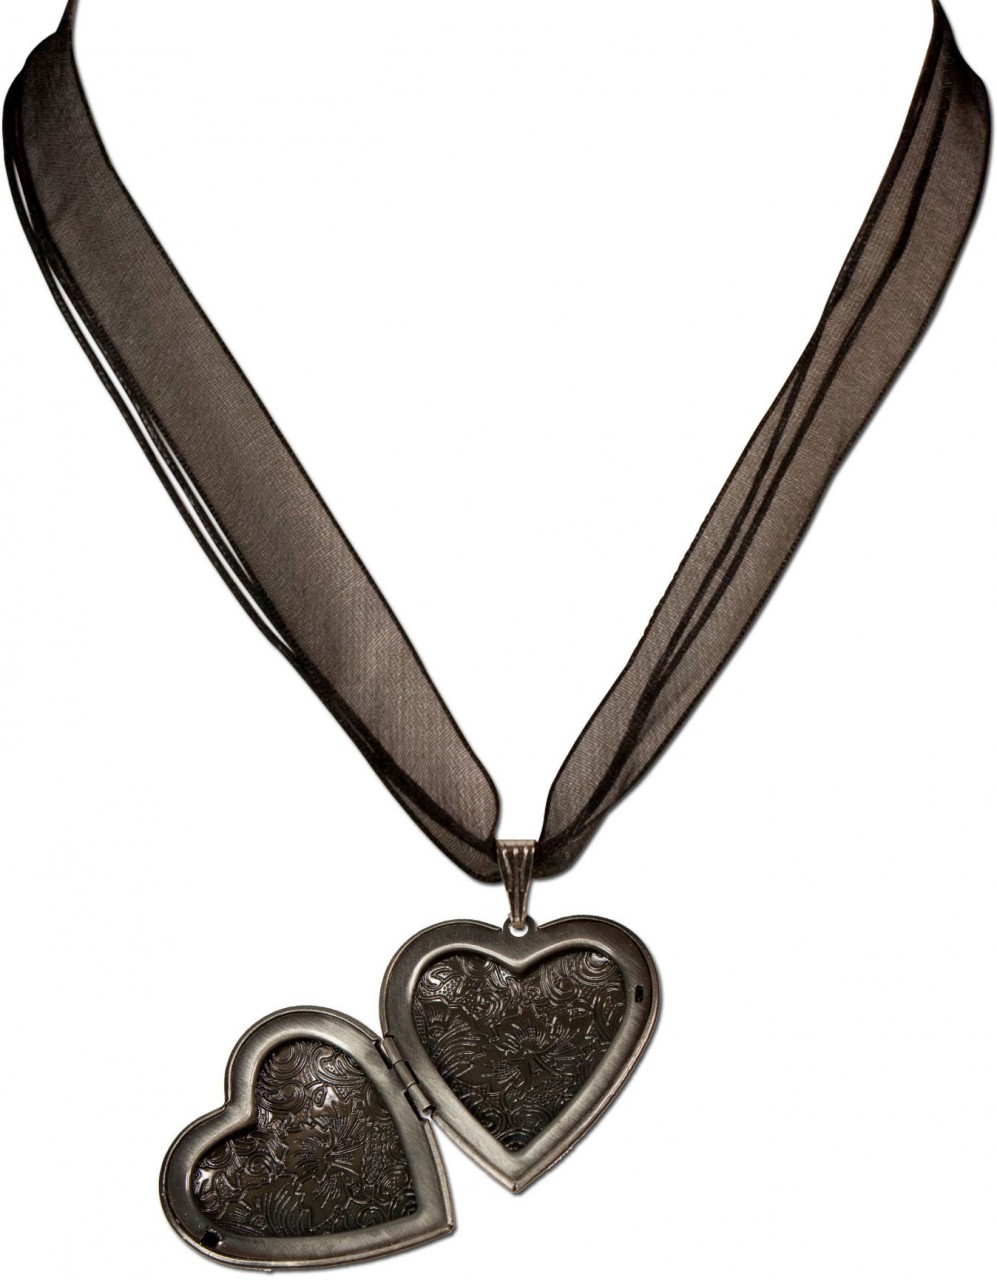 Podgląd: Naszyjnik organza serce amulet czarny